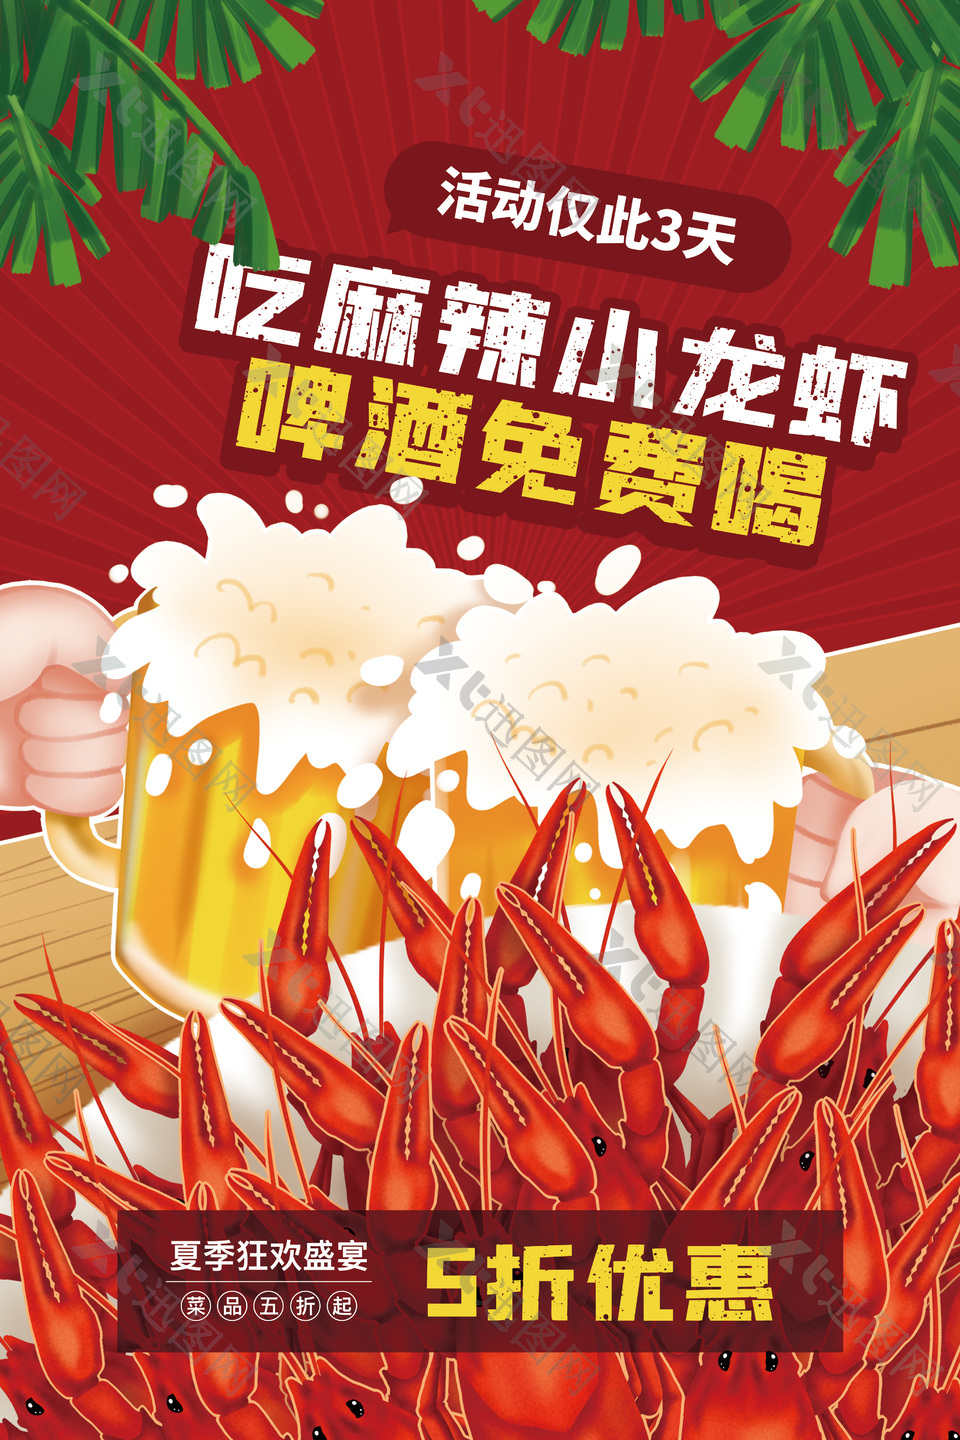 卡通风夏季狂欢麻辣小龙虾活动海报素材下载